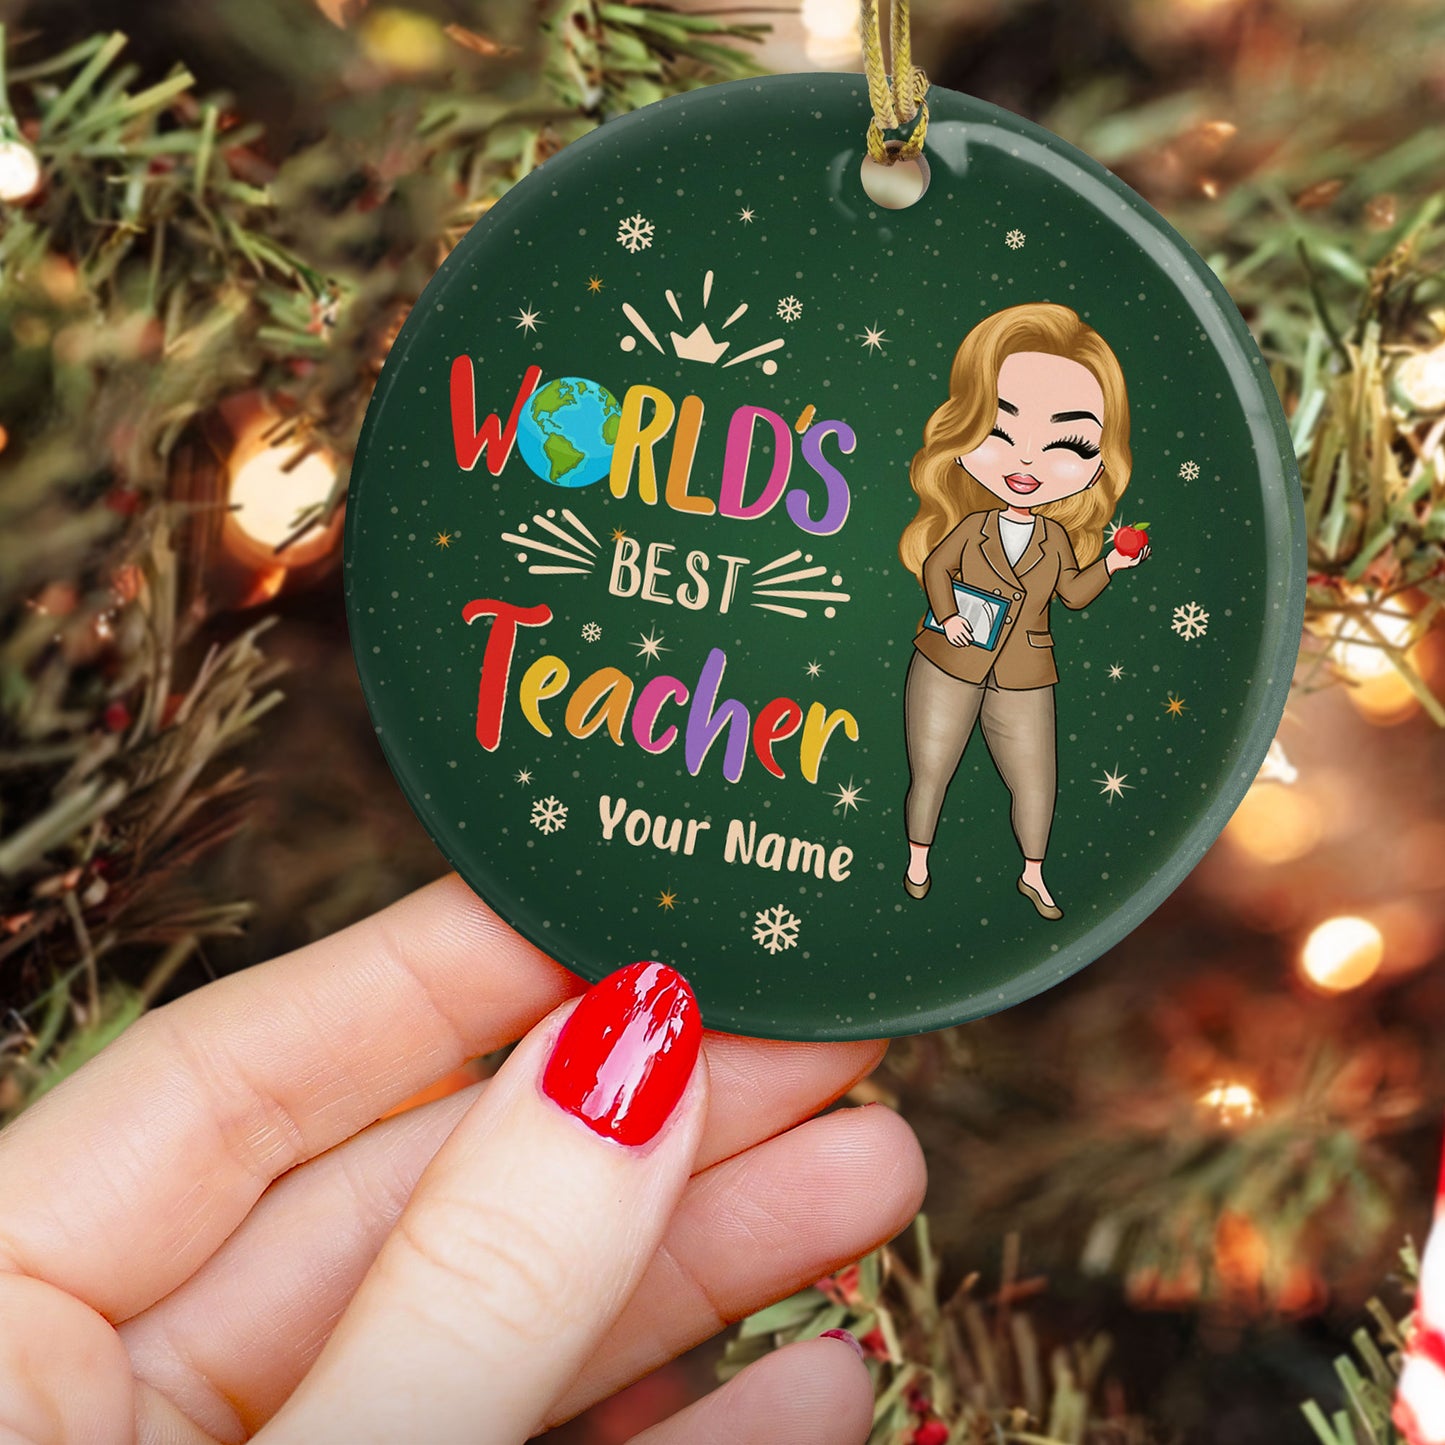 World's Best Teacher - Personalized Ornament - Christmas Gift For Teacher